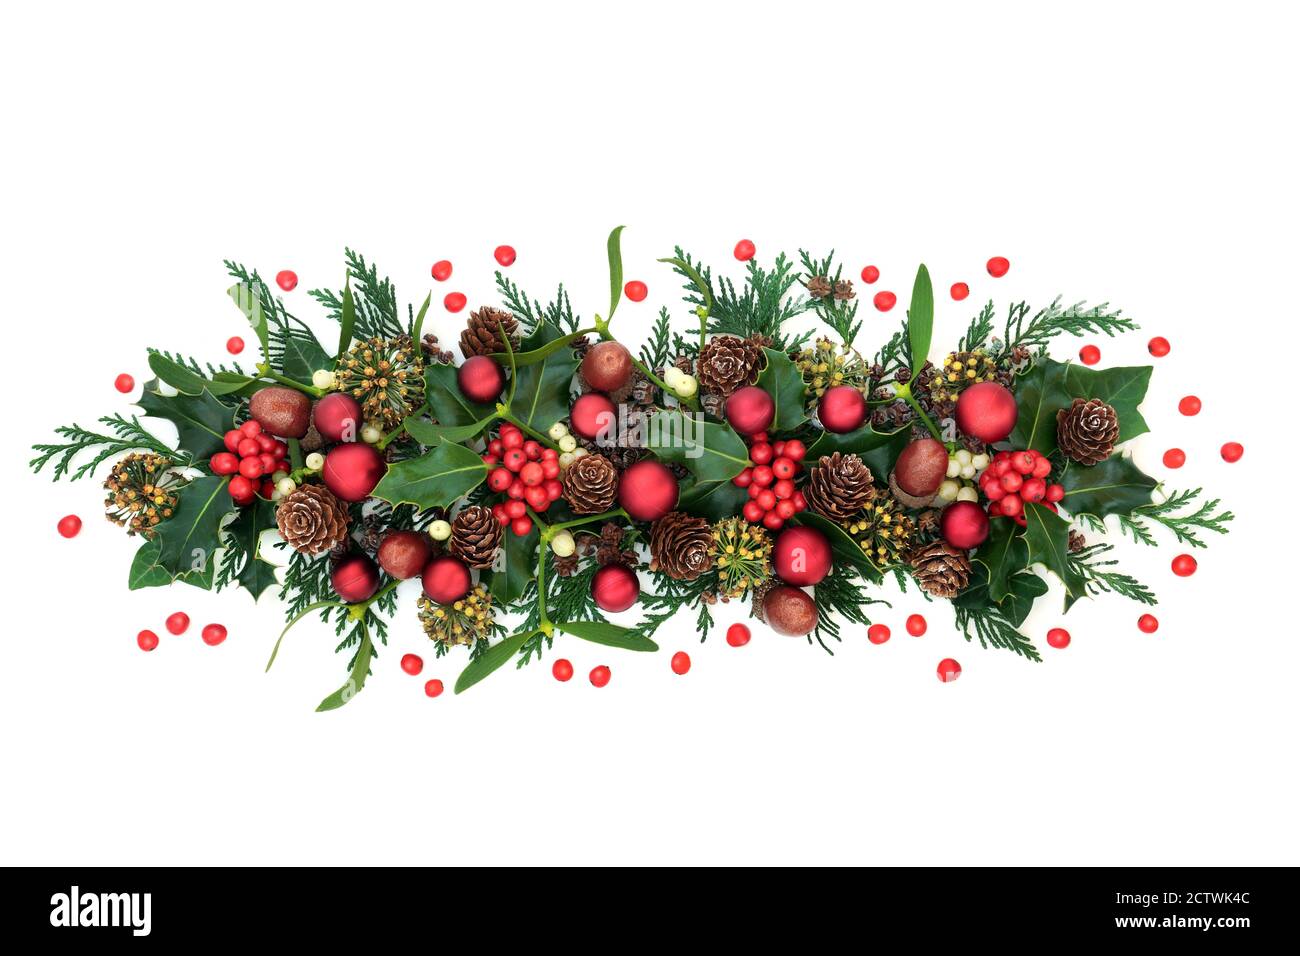 Décoration de Noël pour les fêtes avec décorations de boules rouges houx et baies volantes, GUI, acorns et cyprès de cèdre sur blanc. Banque D'Images